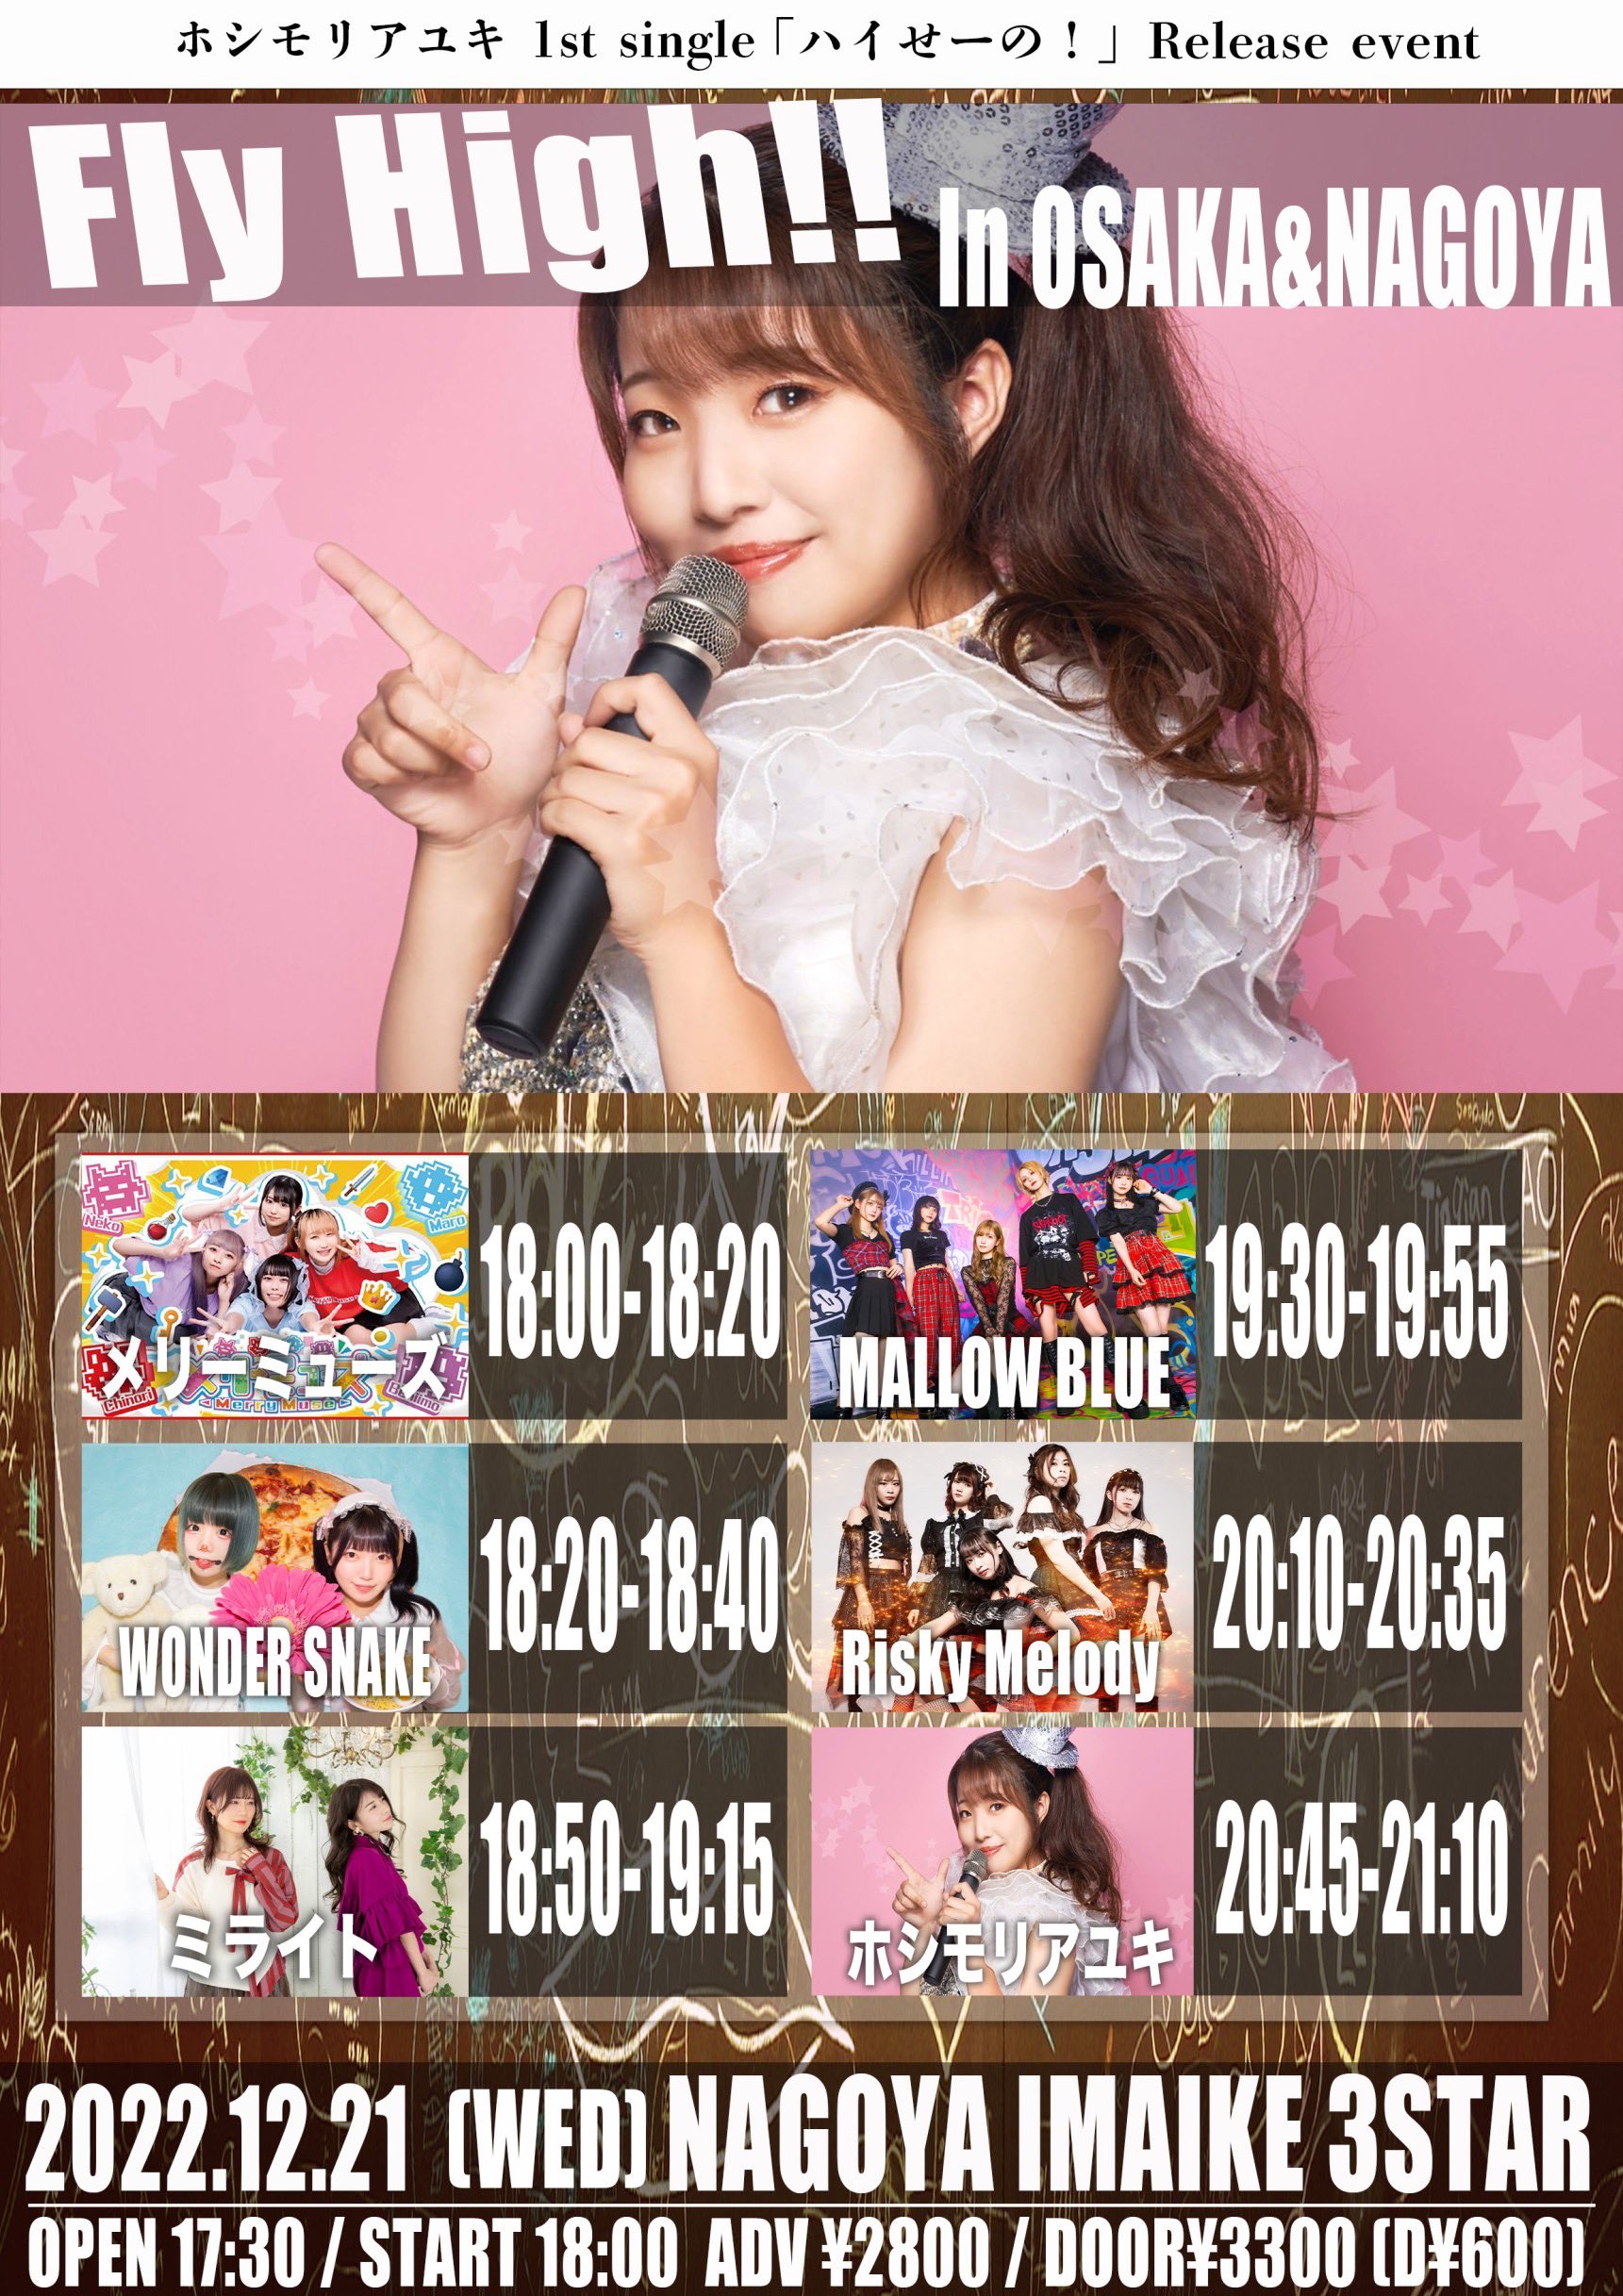 星井あおサポート出演公演(MALLOW BLUE)『ホシモリアユキ1st single｢ハイせーの!｣Release EVENT 『Fly High!! In NAGOYA』』